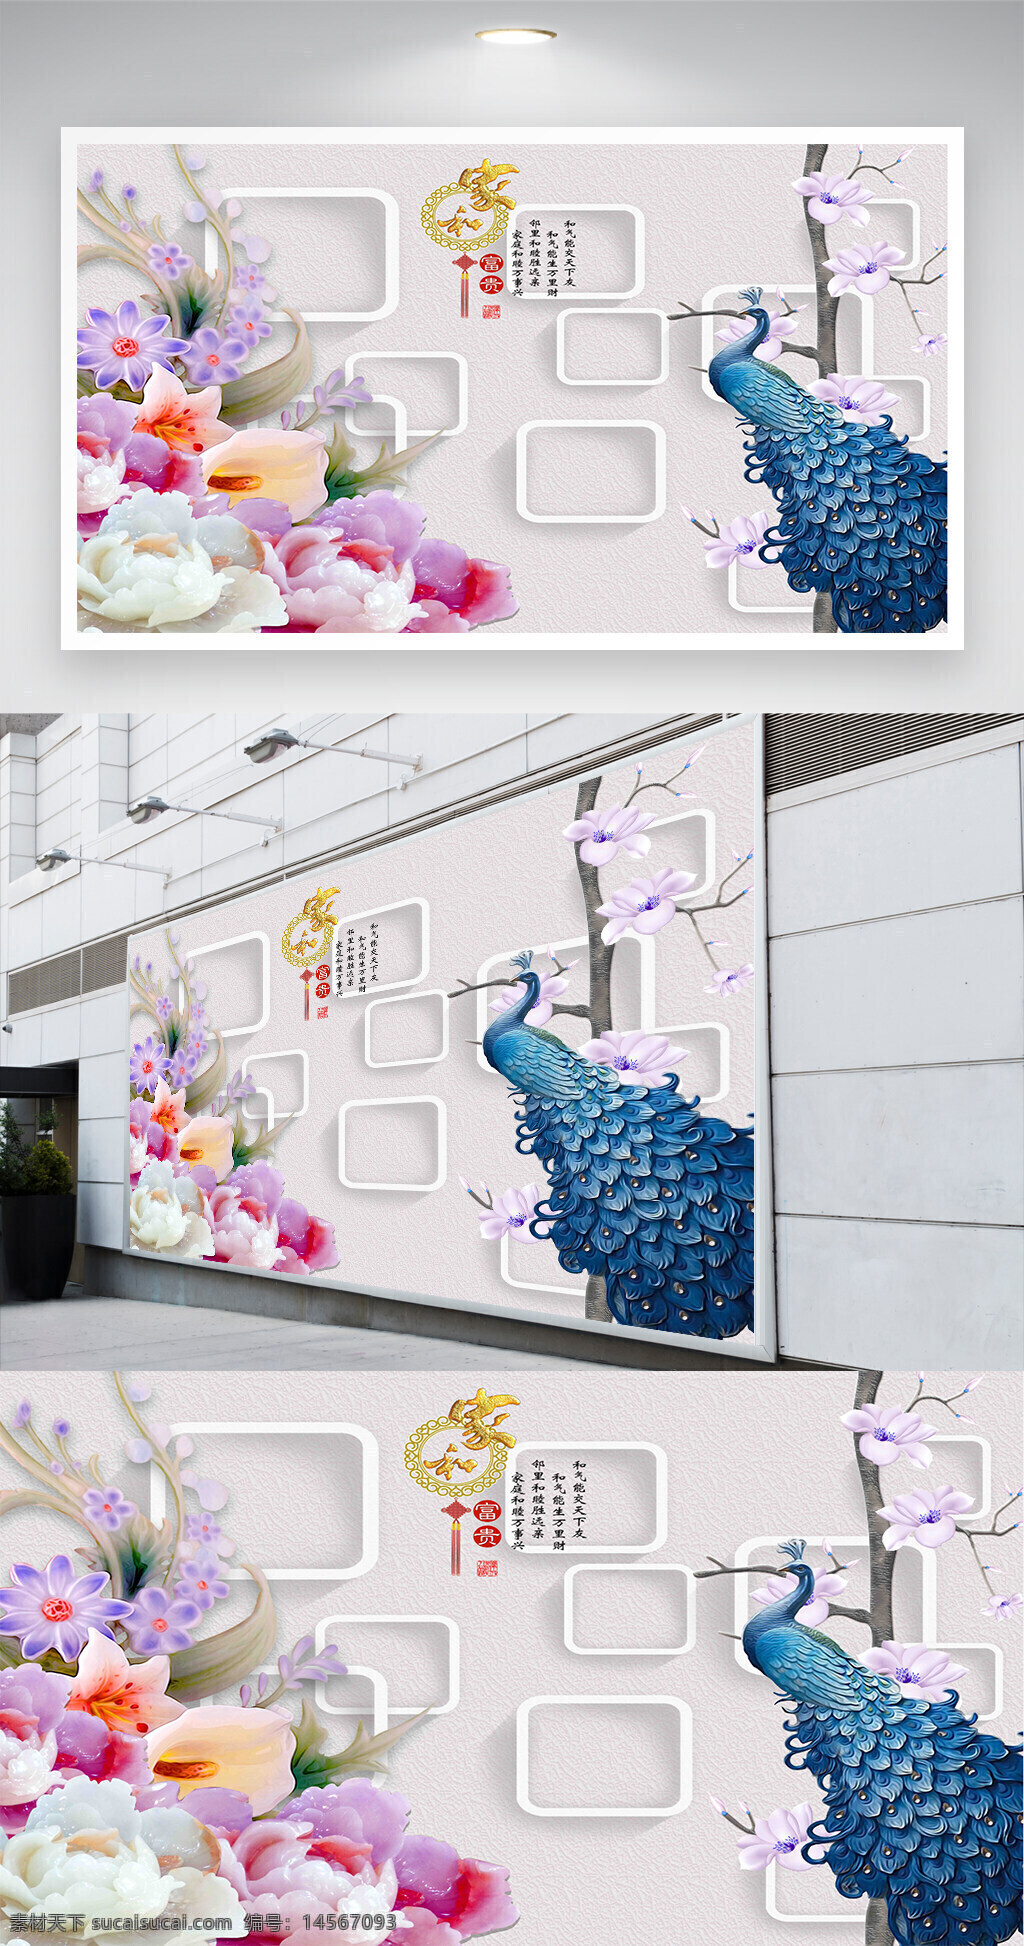 孔雀玉兰3d立体花朵背景墙 孔雀 玉兰画 3d立体背景墙 花朵背景墙 浮雕